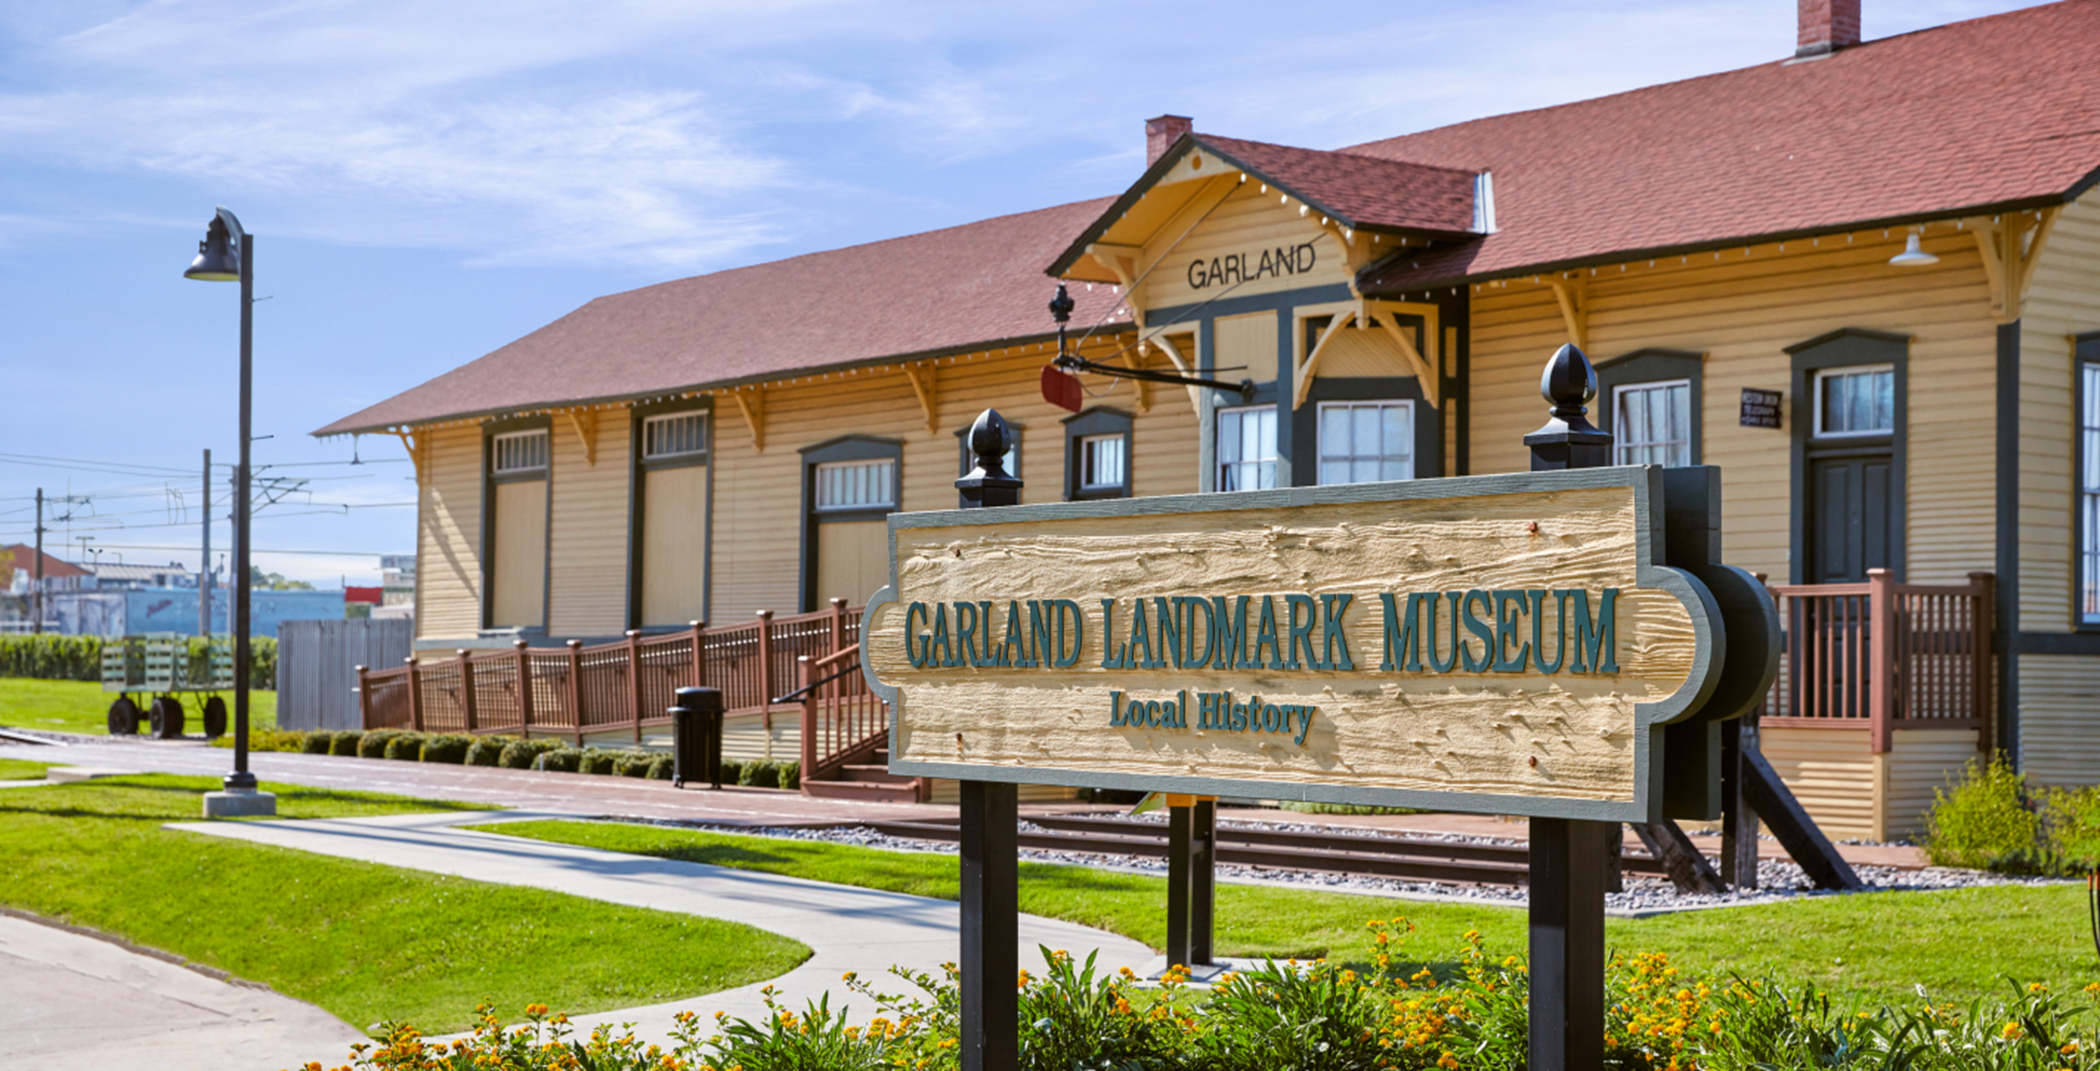 Outside Garland Landmark Museum